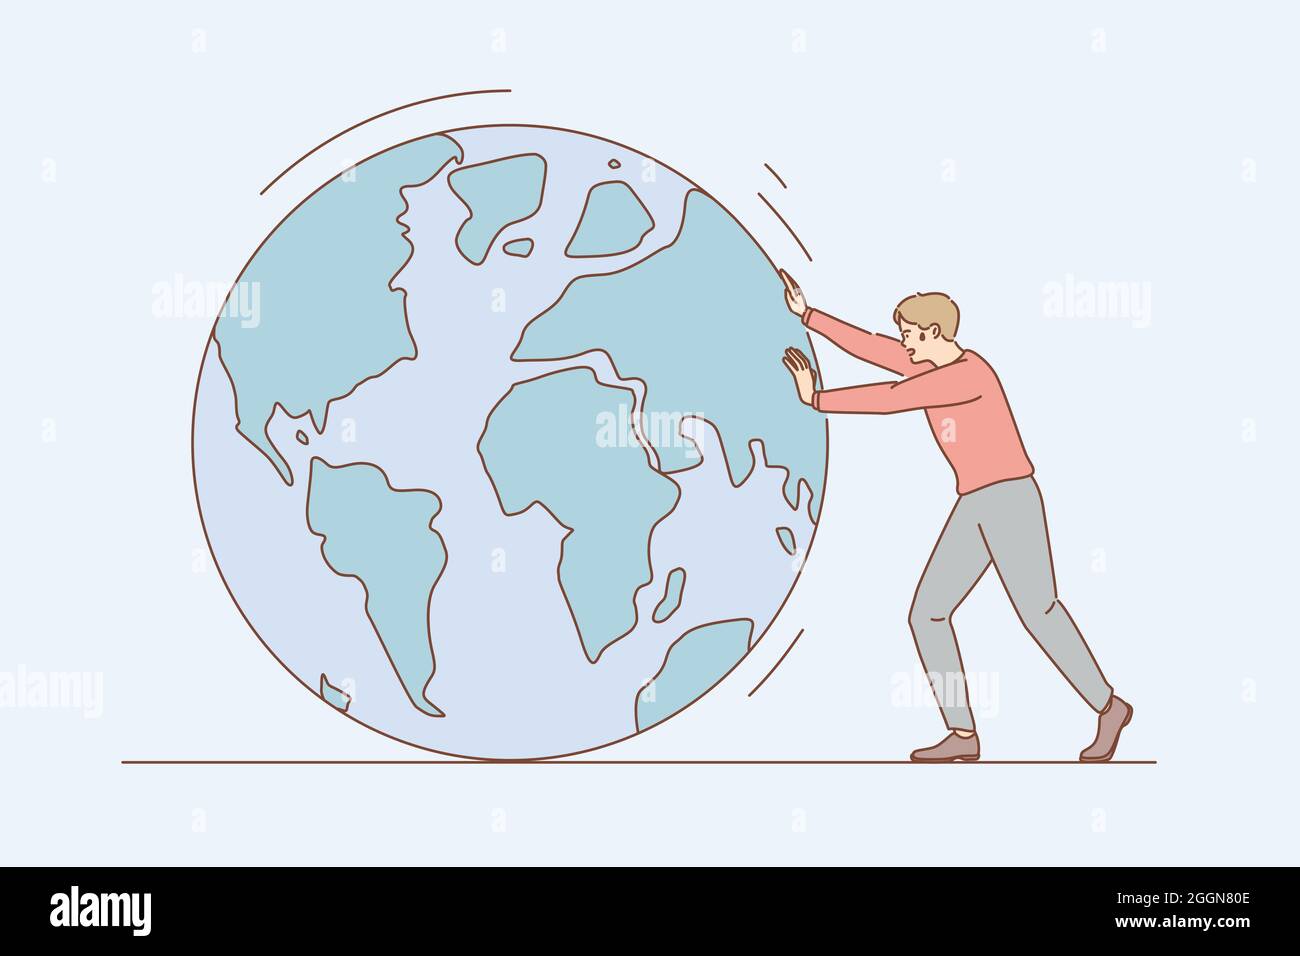 Conversación ambiental y concepto de salvar la tierra. Personaje de dibujos animados de hombre joven tirando del planeta tierra con las manos rodando hacia una sola ilustración vectorial Ilustración del Vector